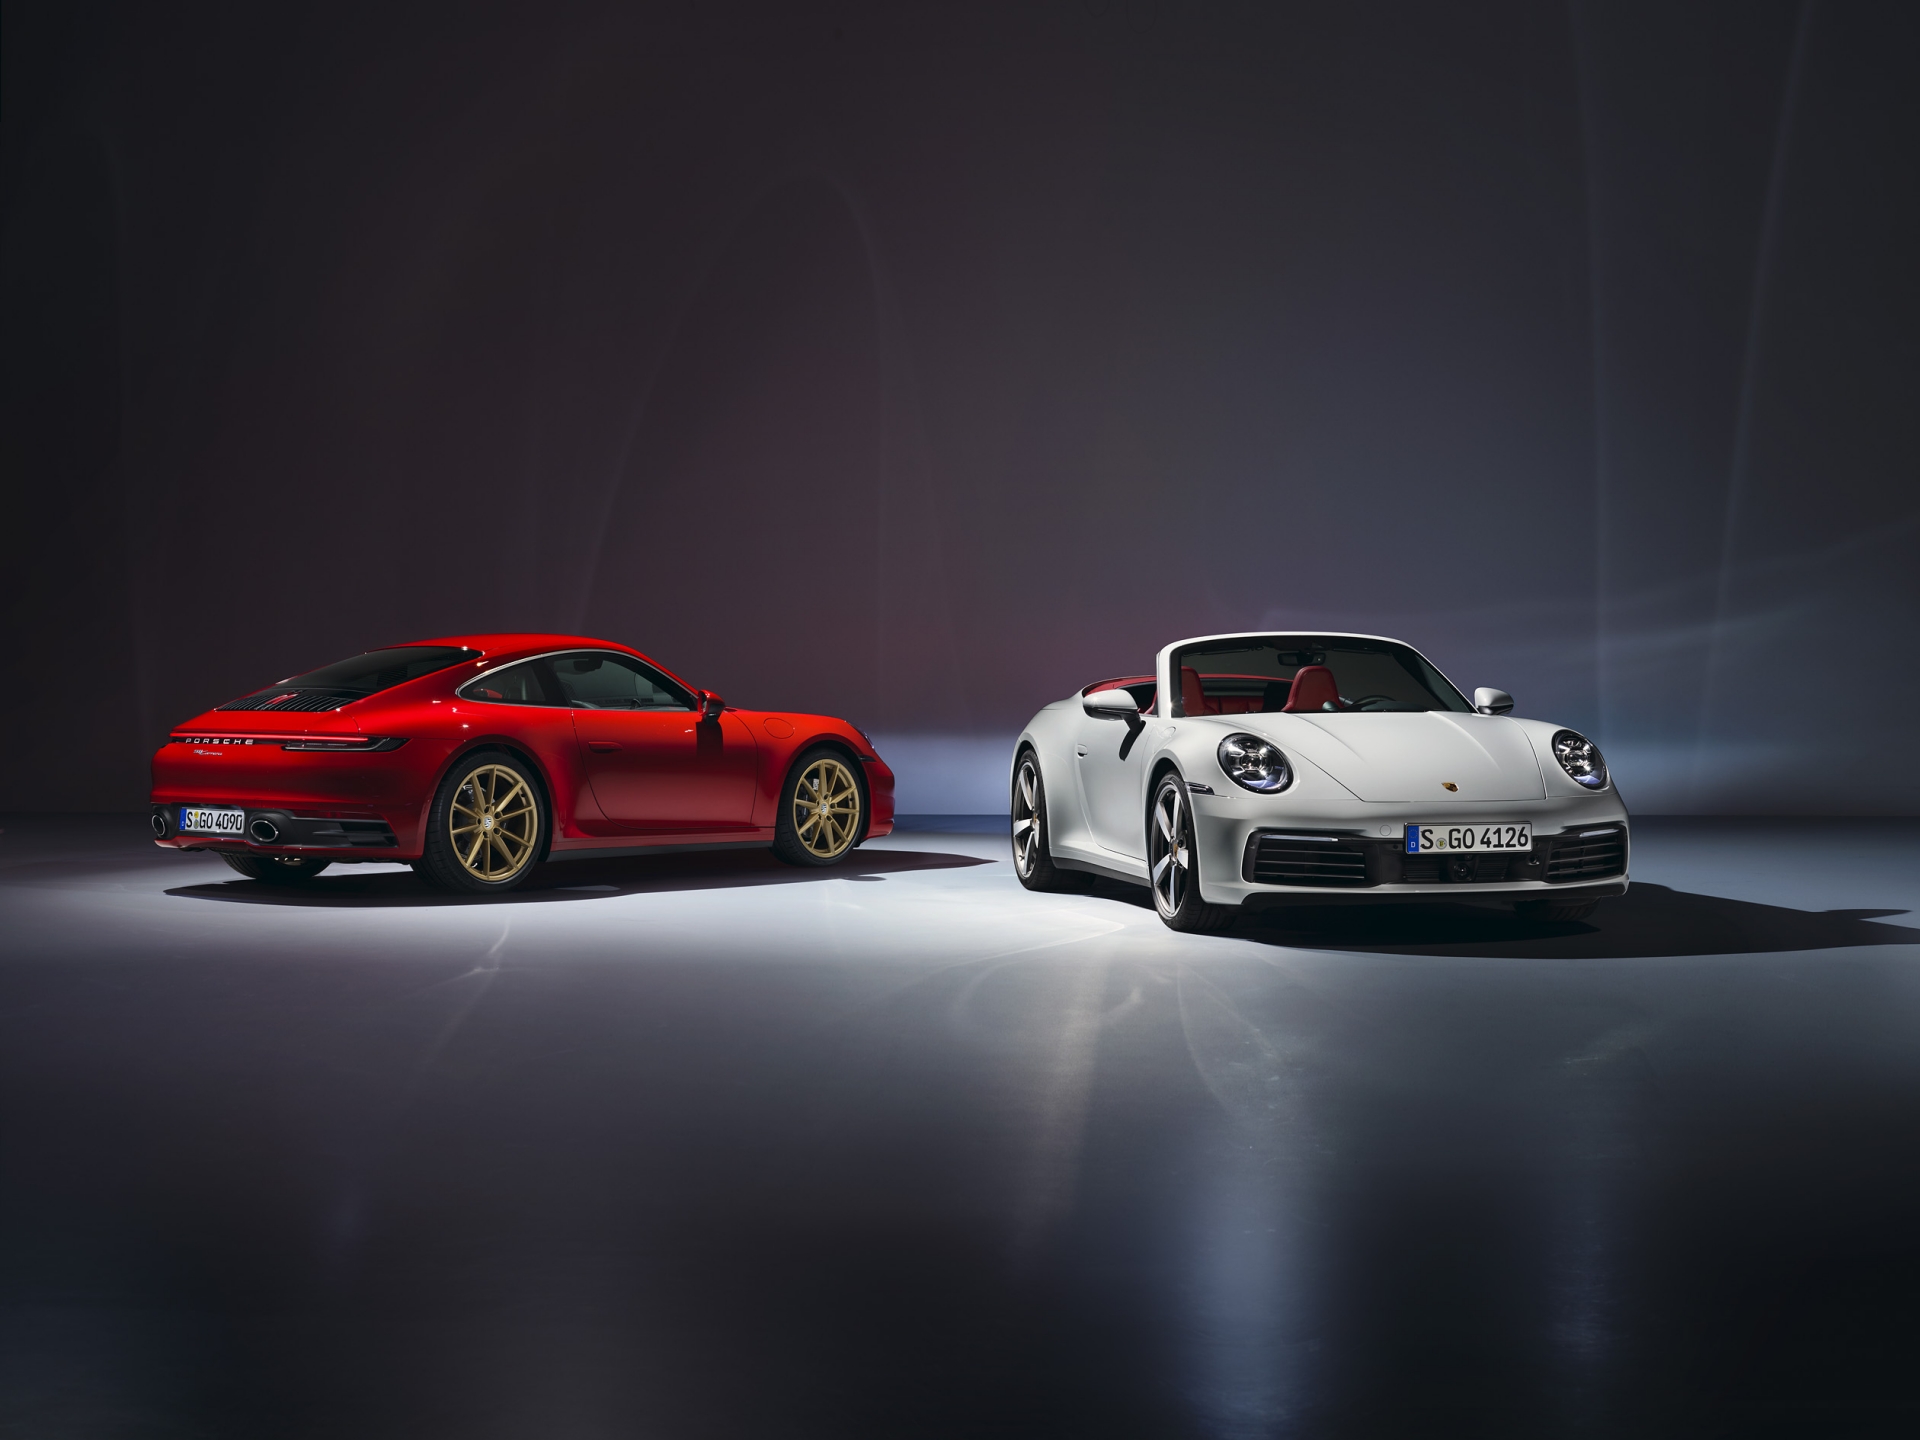 Porsche 911 Carrera thêm 2 phiên bản mới, giá từ 6,73 tỷ đồng | Thời Đại